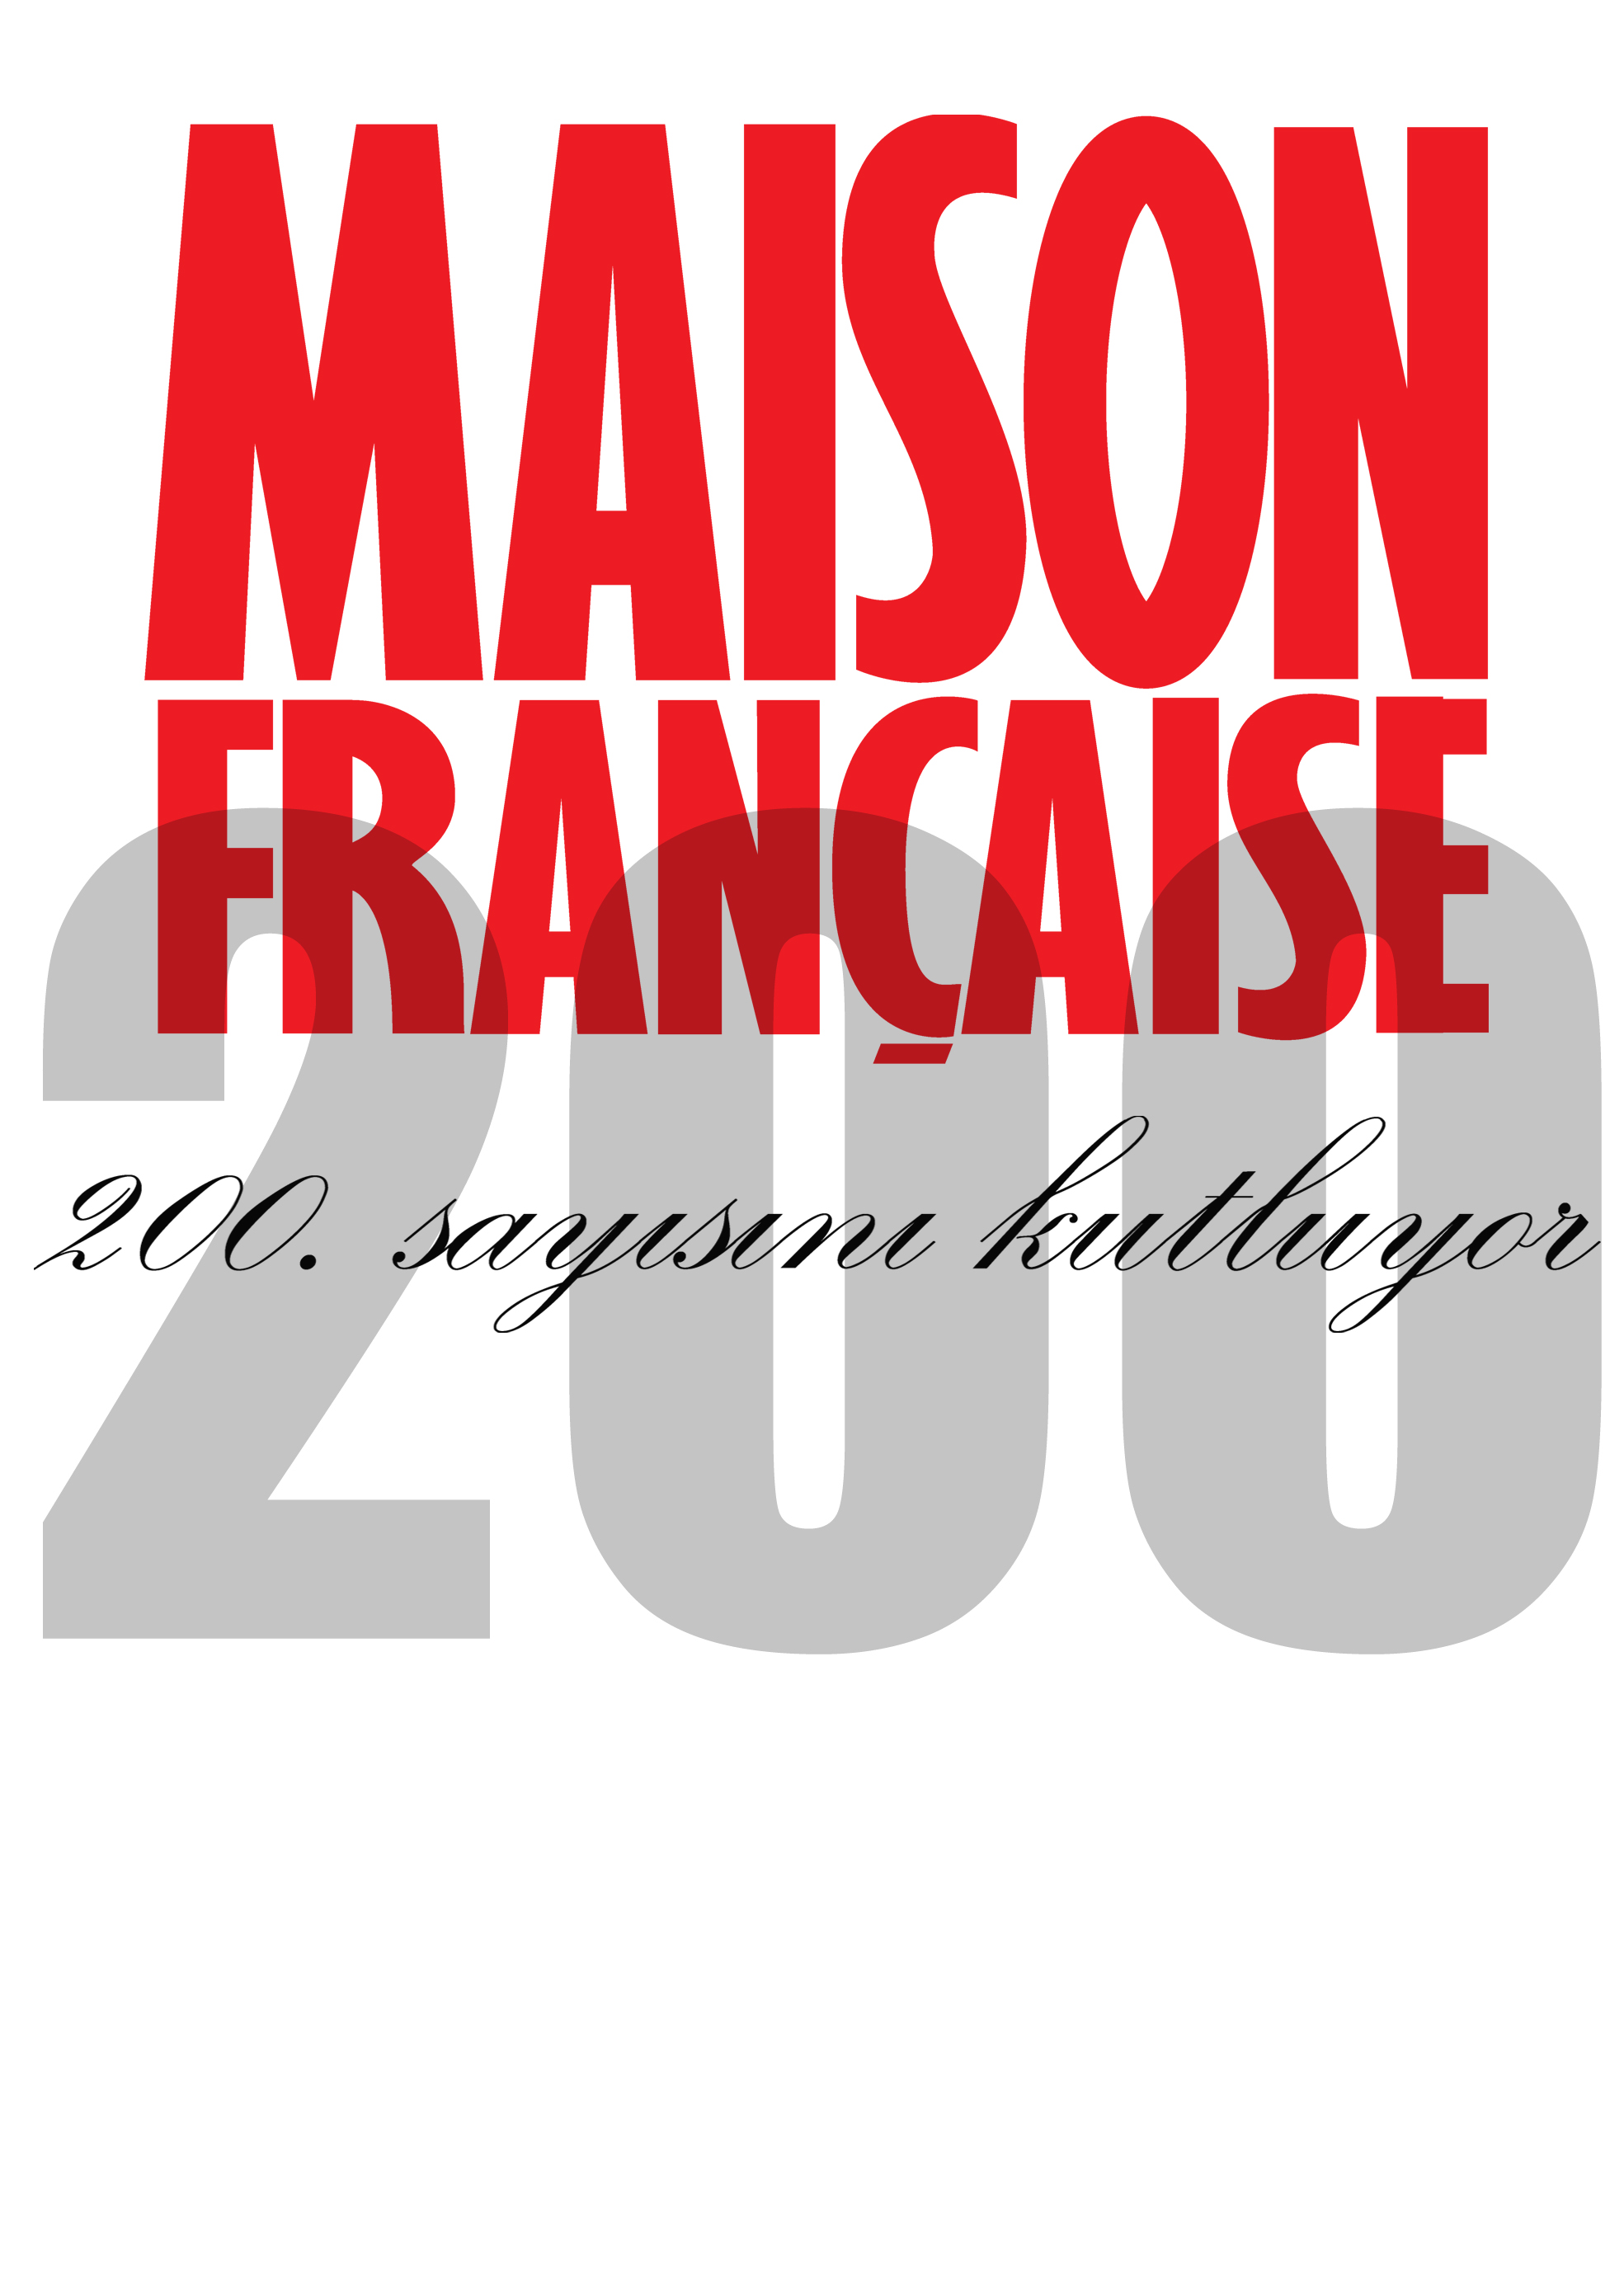 Maison Française 200. sayısını kutluyor!